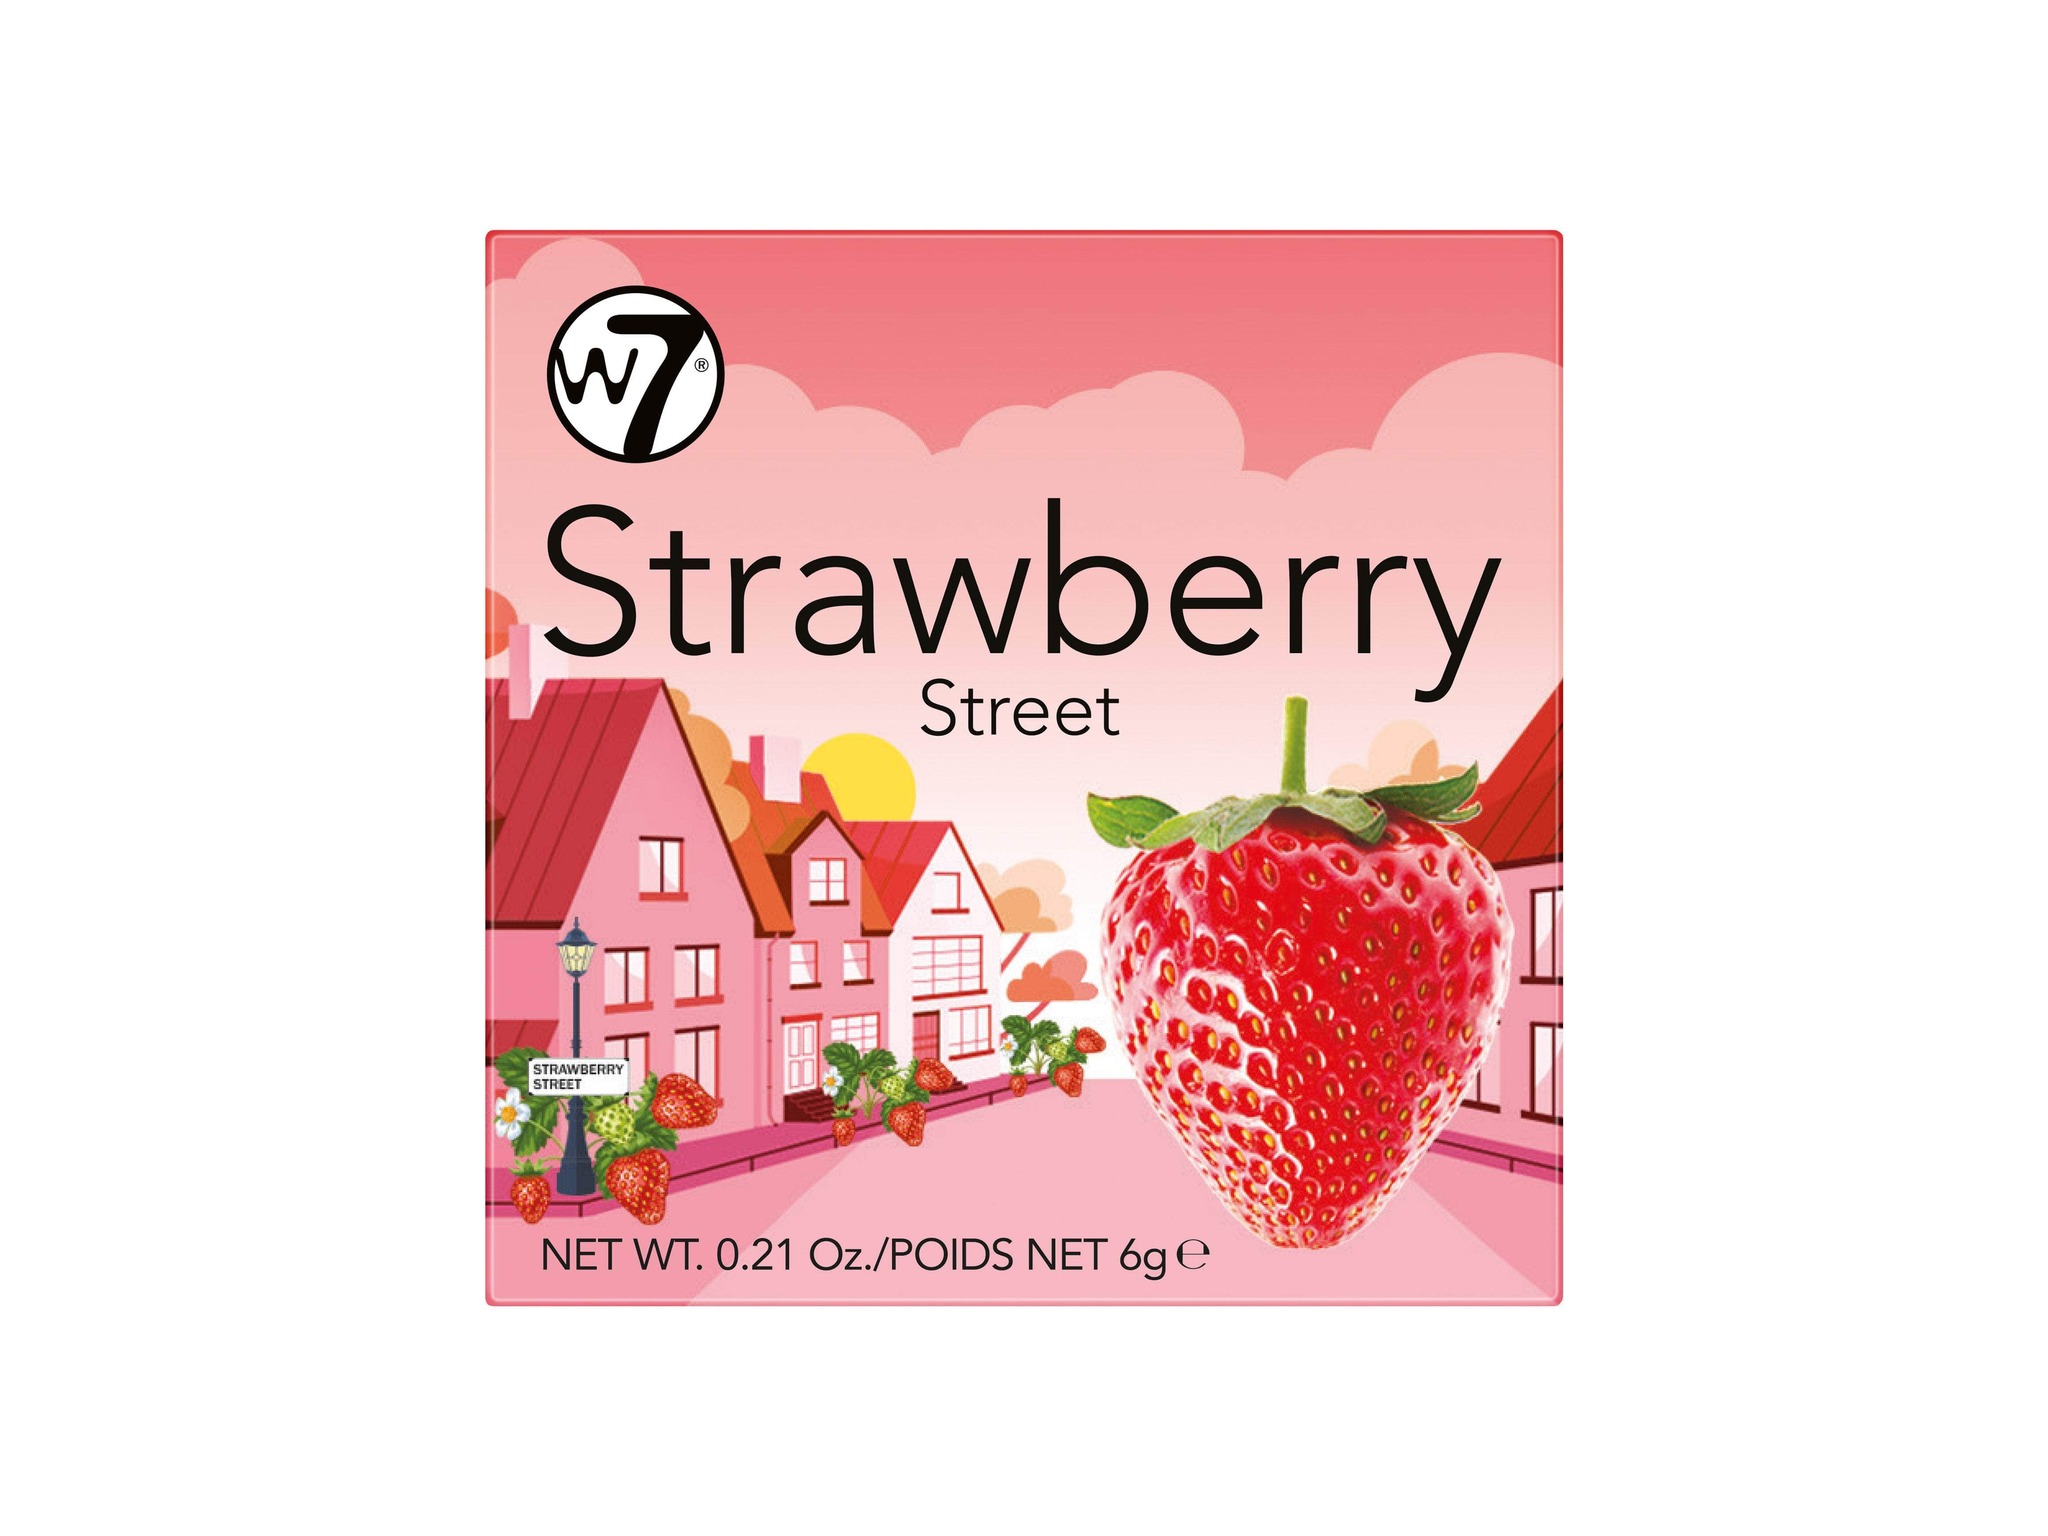 W7 Strawberry Street Blusher